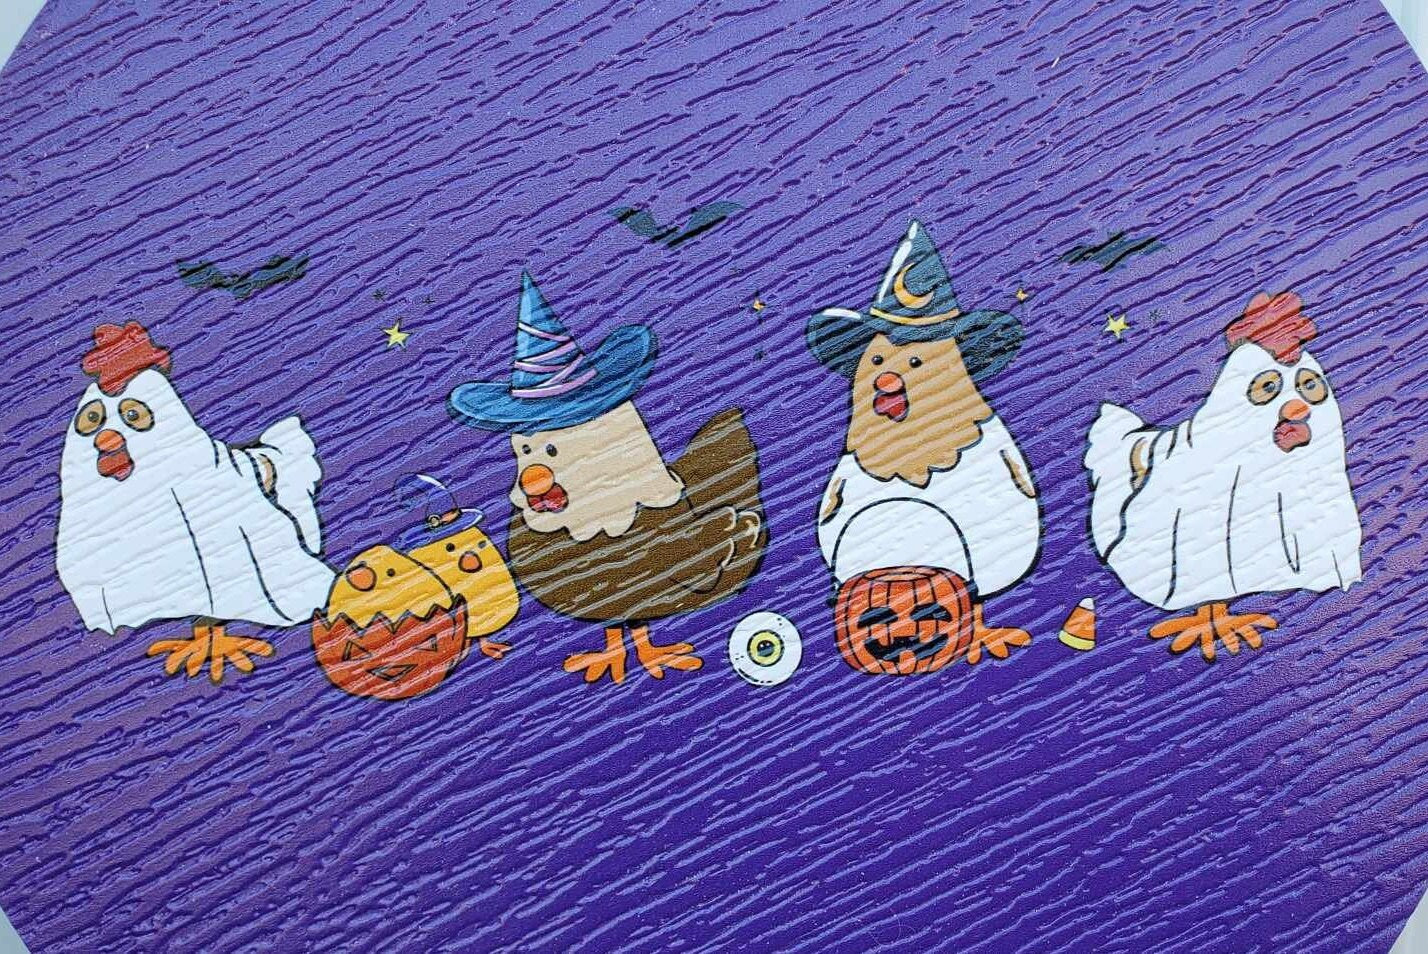 Chicken Hen Dress up Costume Witch Ghost Pumpkin Halloween Trick or Treat PVC Weatherproof Ultraviolet Ink Doorhanger Outdoor Use